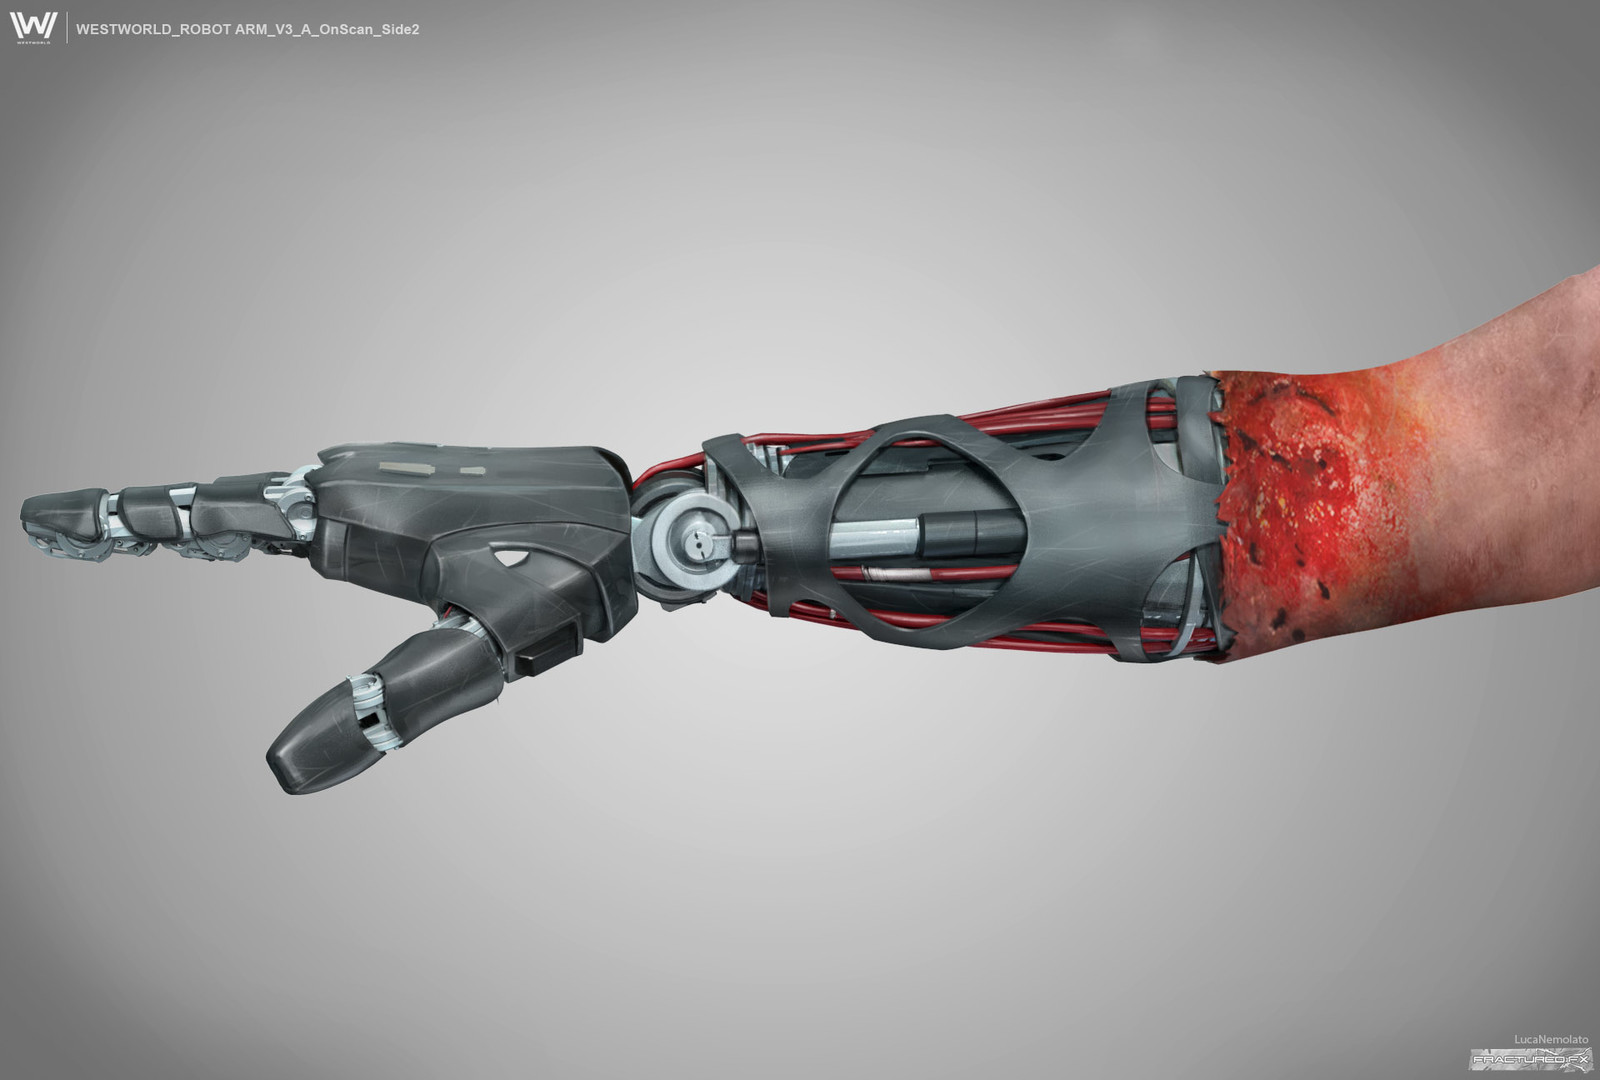 Westworld s.2 - Armistice Robotic Arm concept art.